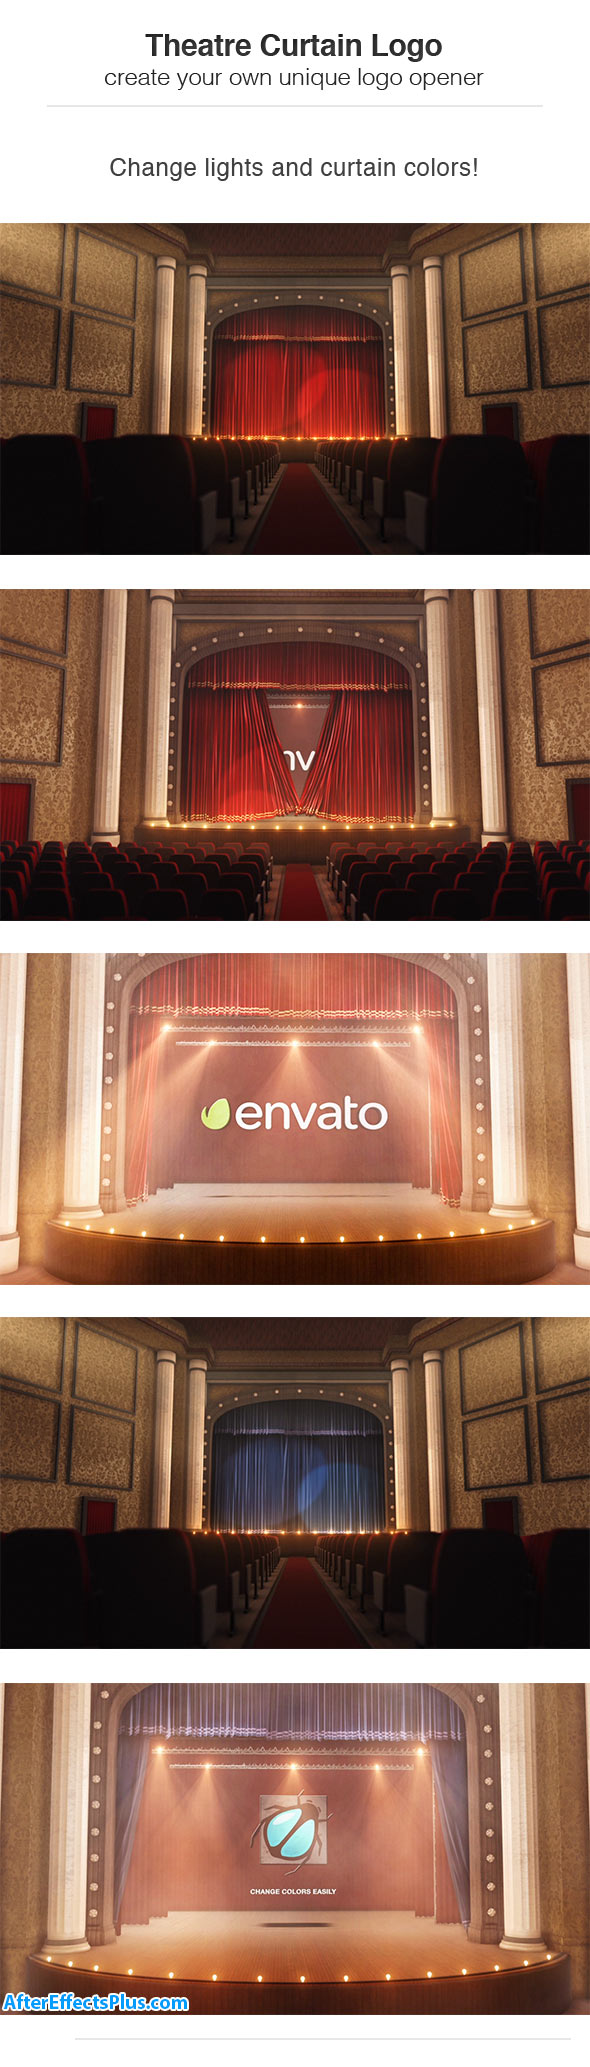 پروژه افتر افکت نمایش لوگو پرده تئاتر - Theatre Curtain Logo